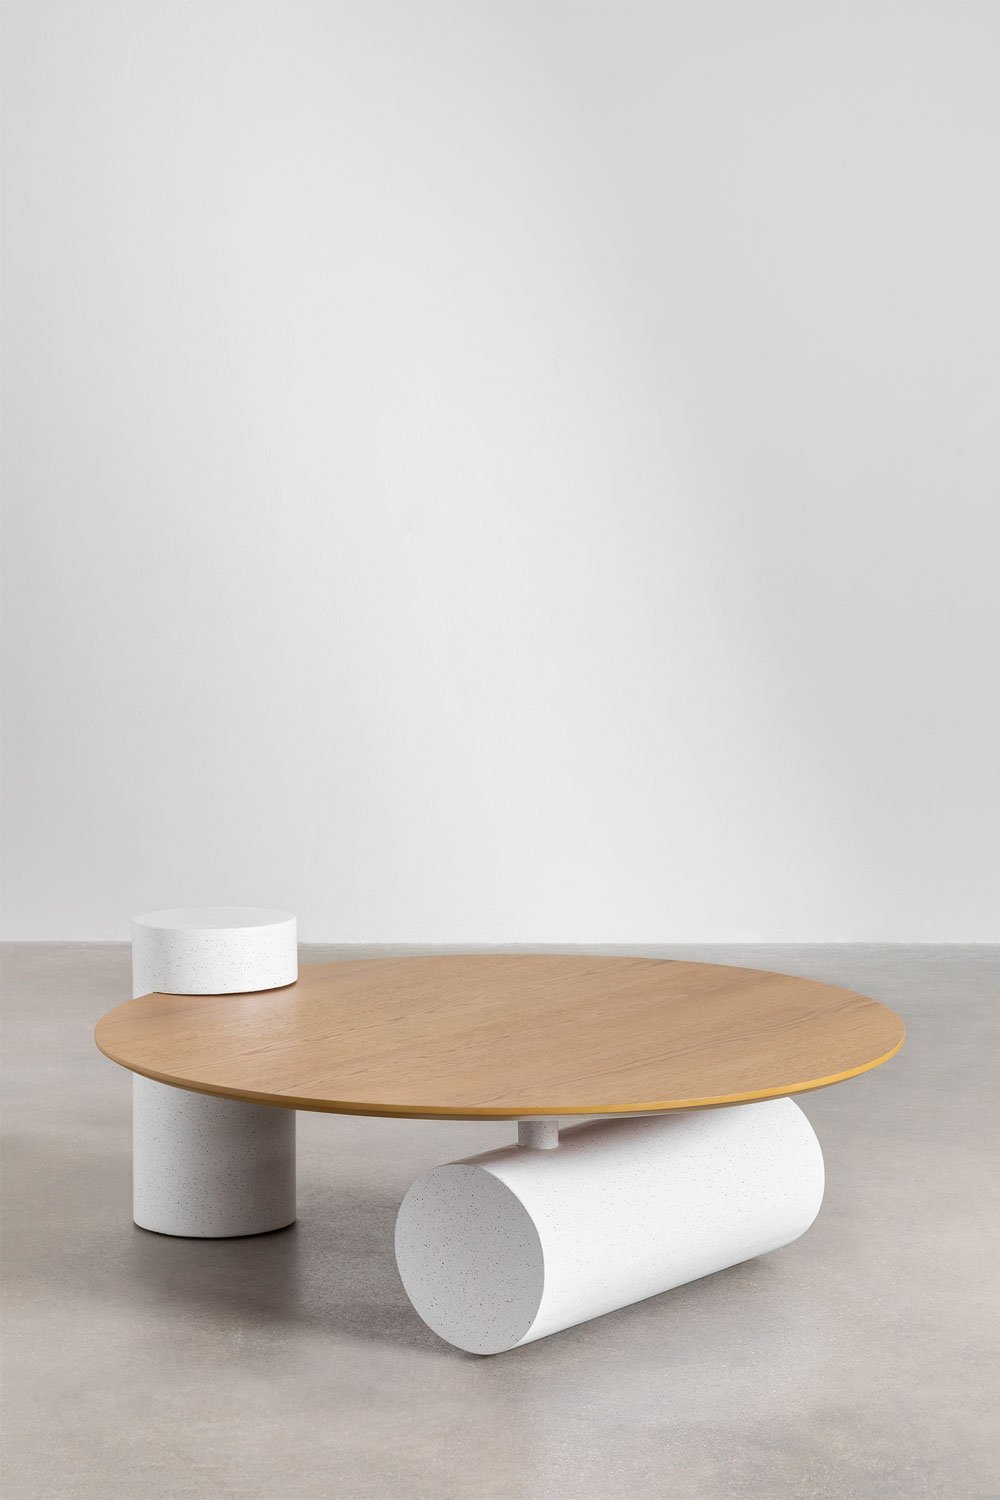  Ronde houten salontafel (Ø100 cm) Serenada, galerij beeld 2